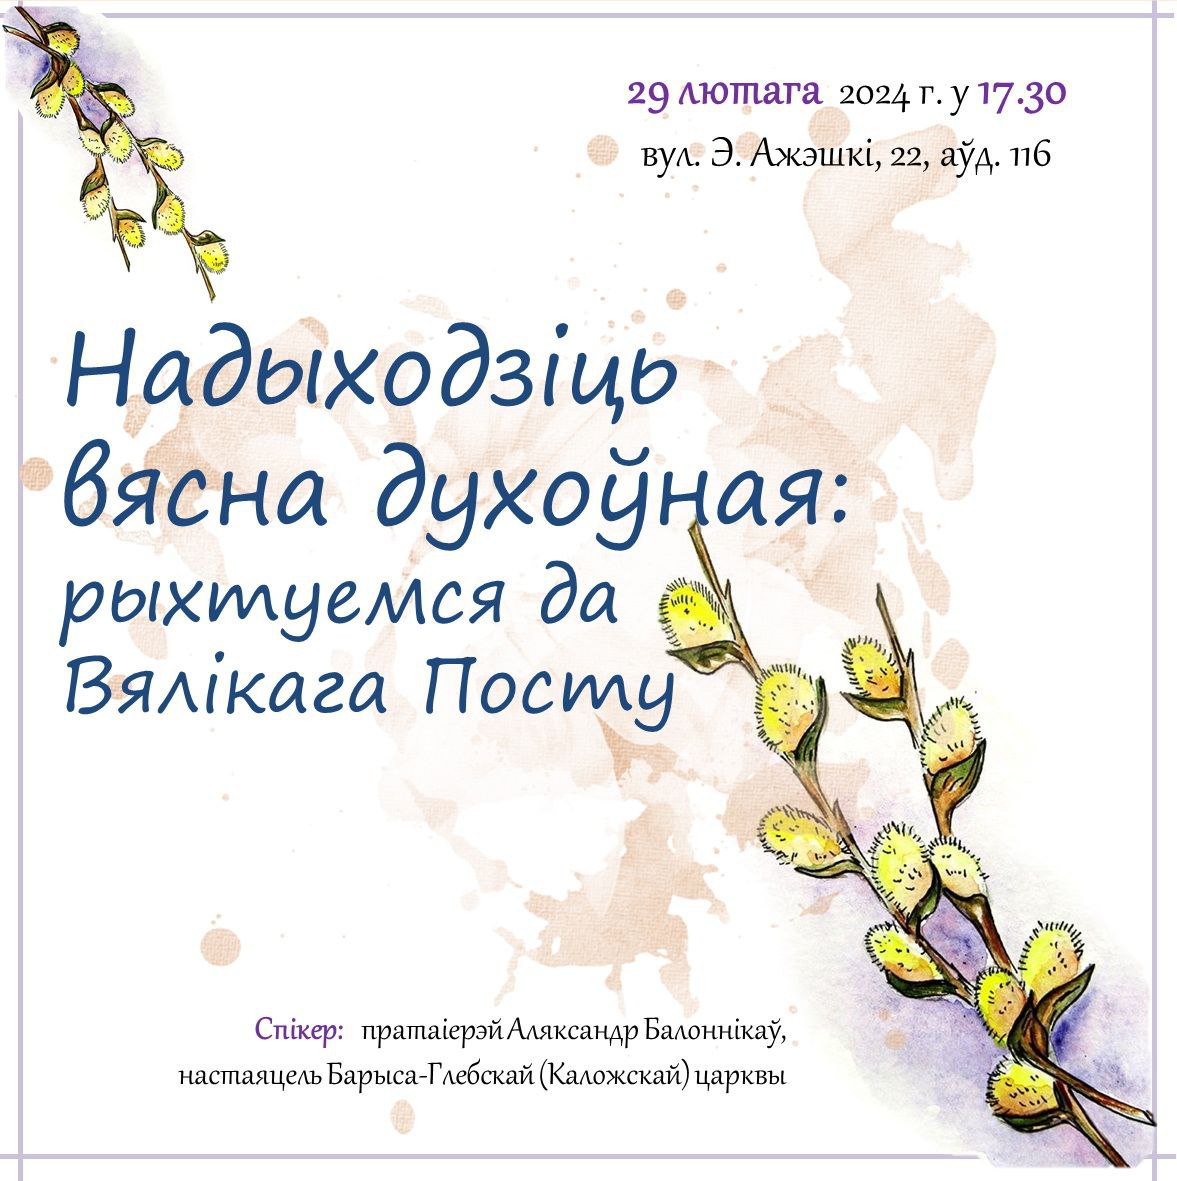 В научной библиотеке состоится встреча клуба «Православные четверги»